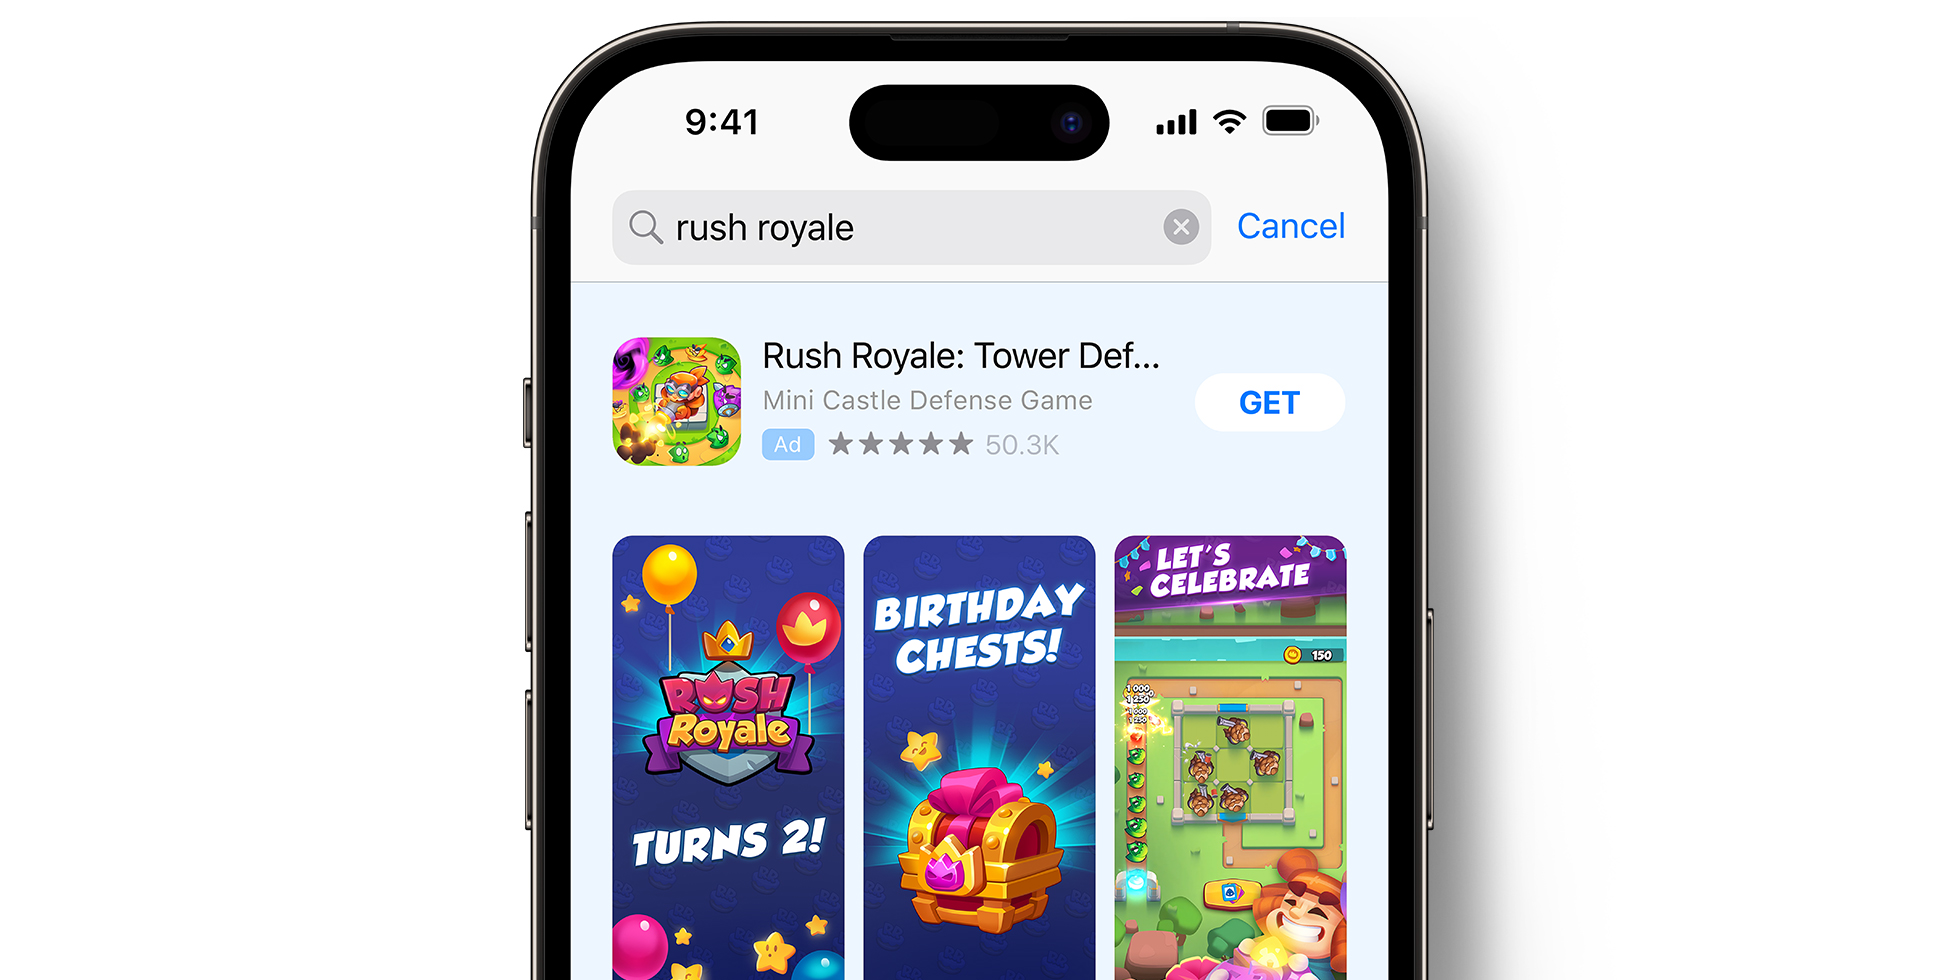 半裁剪的 iPhone 背景图片，屏幕上显示着“Rush Royale: Tower Defense TD”的 App Store 广告